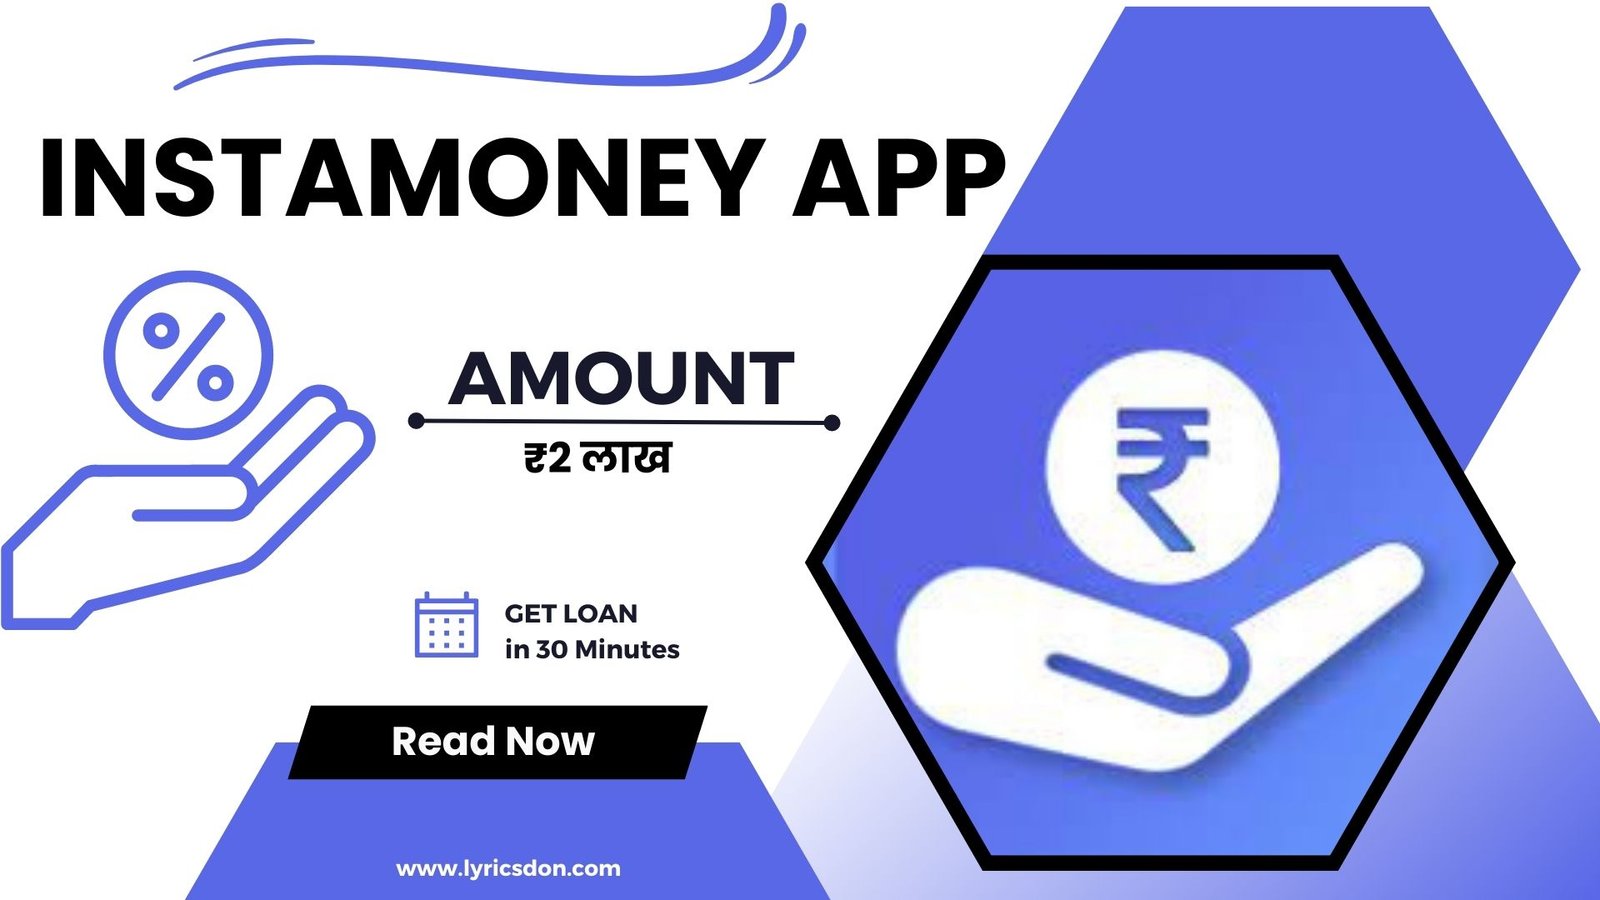 InstaMoney Loan App Loan Amount